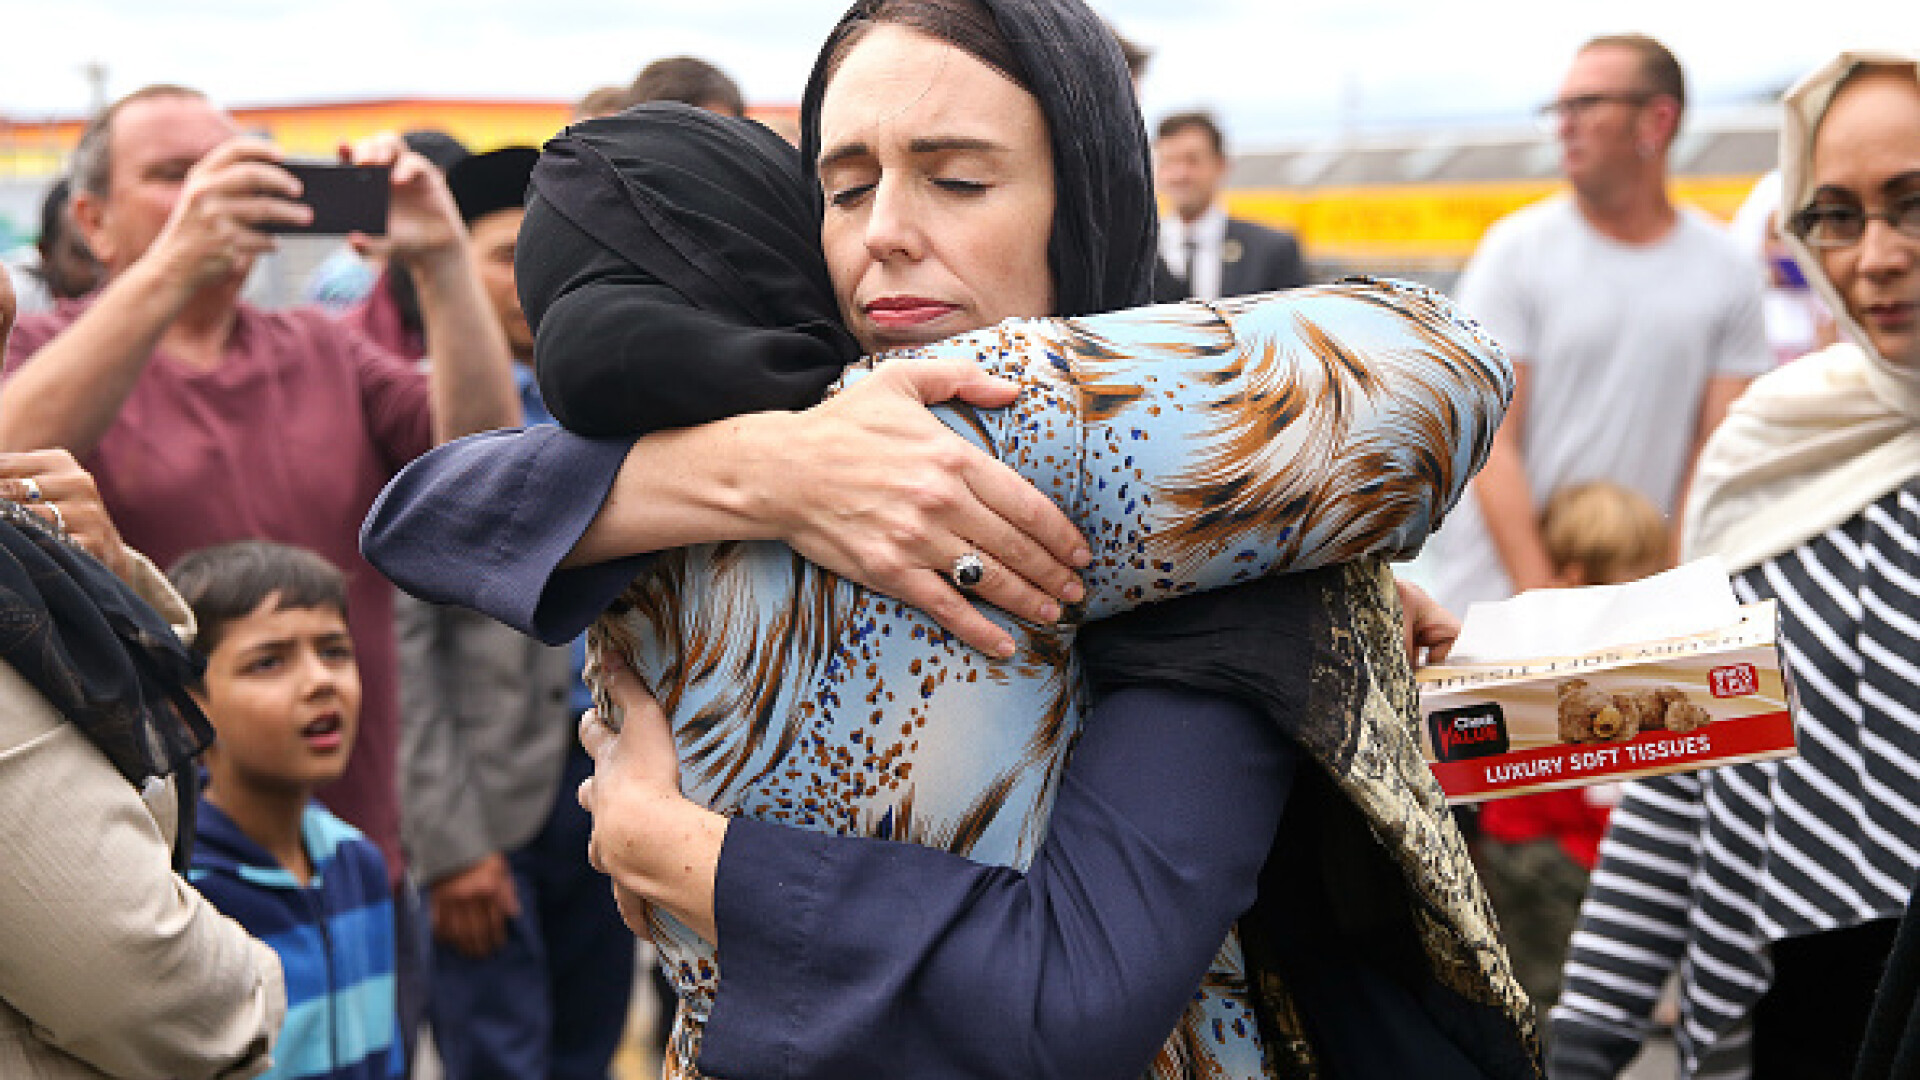 Momente emoționante în Noua Zeelandă, după atacul de vineri - 9